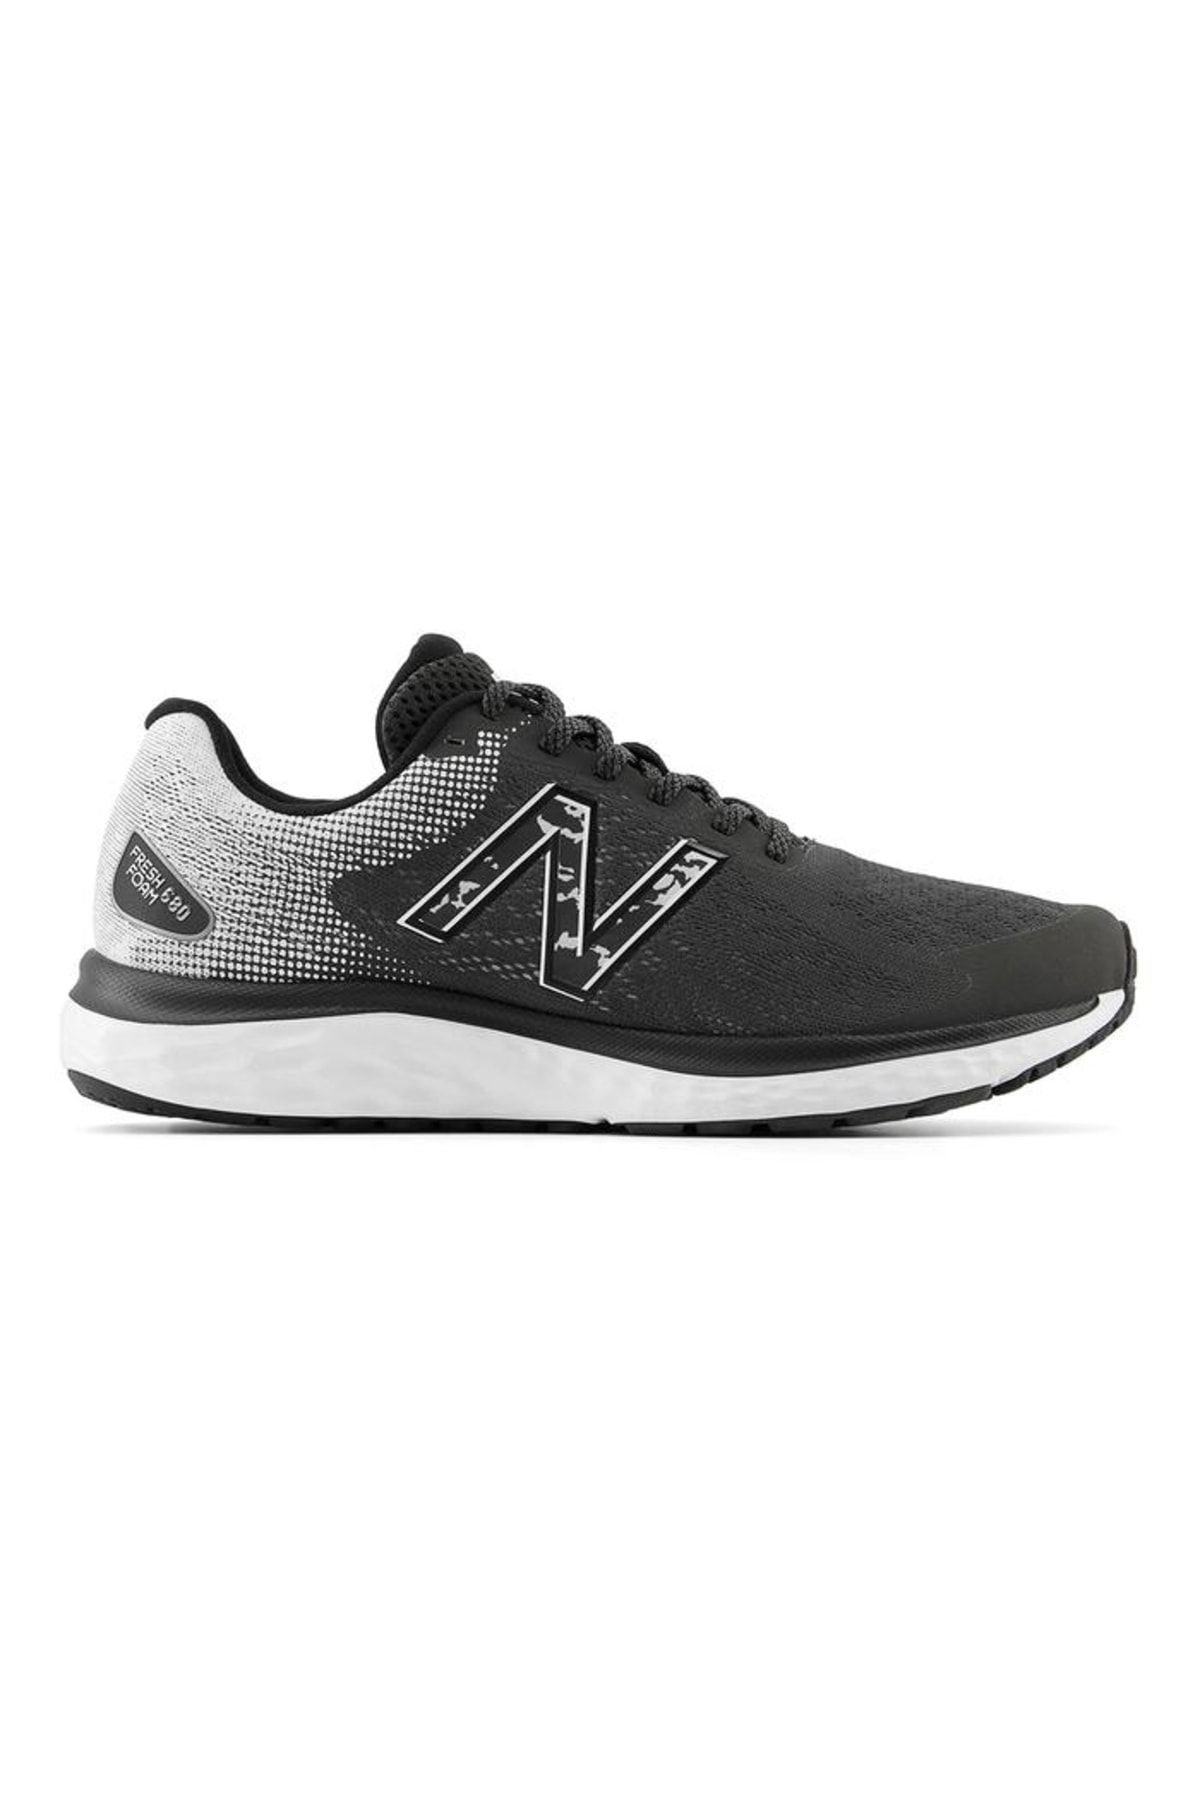 New Balance 680 Siyah Erkek Koşu Ayakkabısı M680nb7